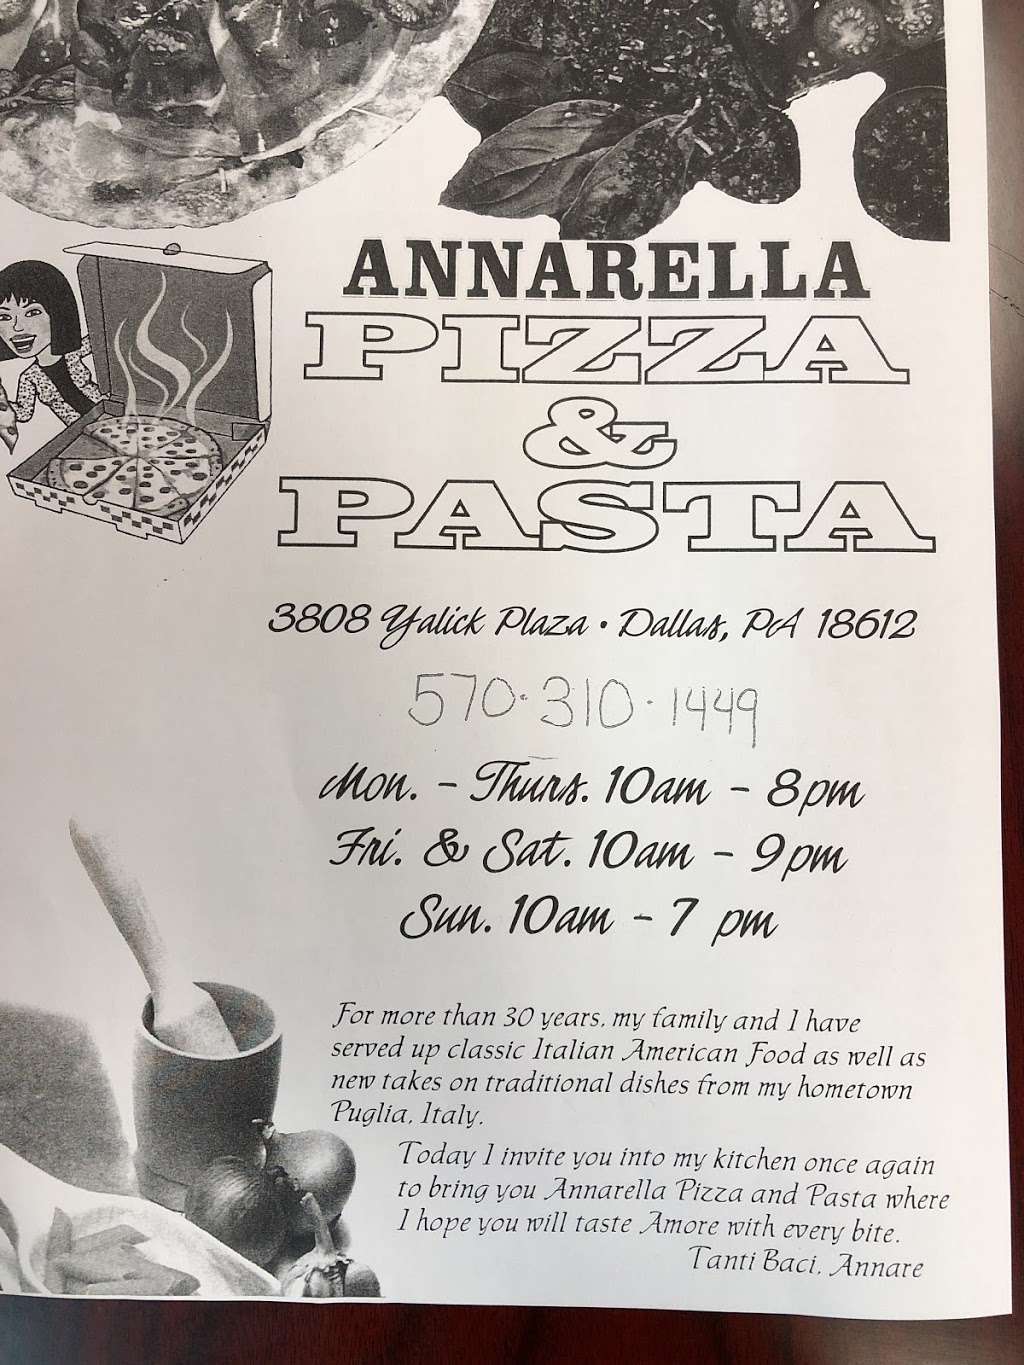 Annarella Pizza & Pasta | 3808 Yallick Plaza, Dallas, PA 18612 | Phone: (570) 310-1449